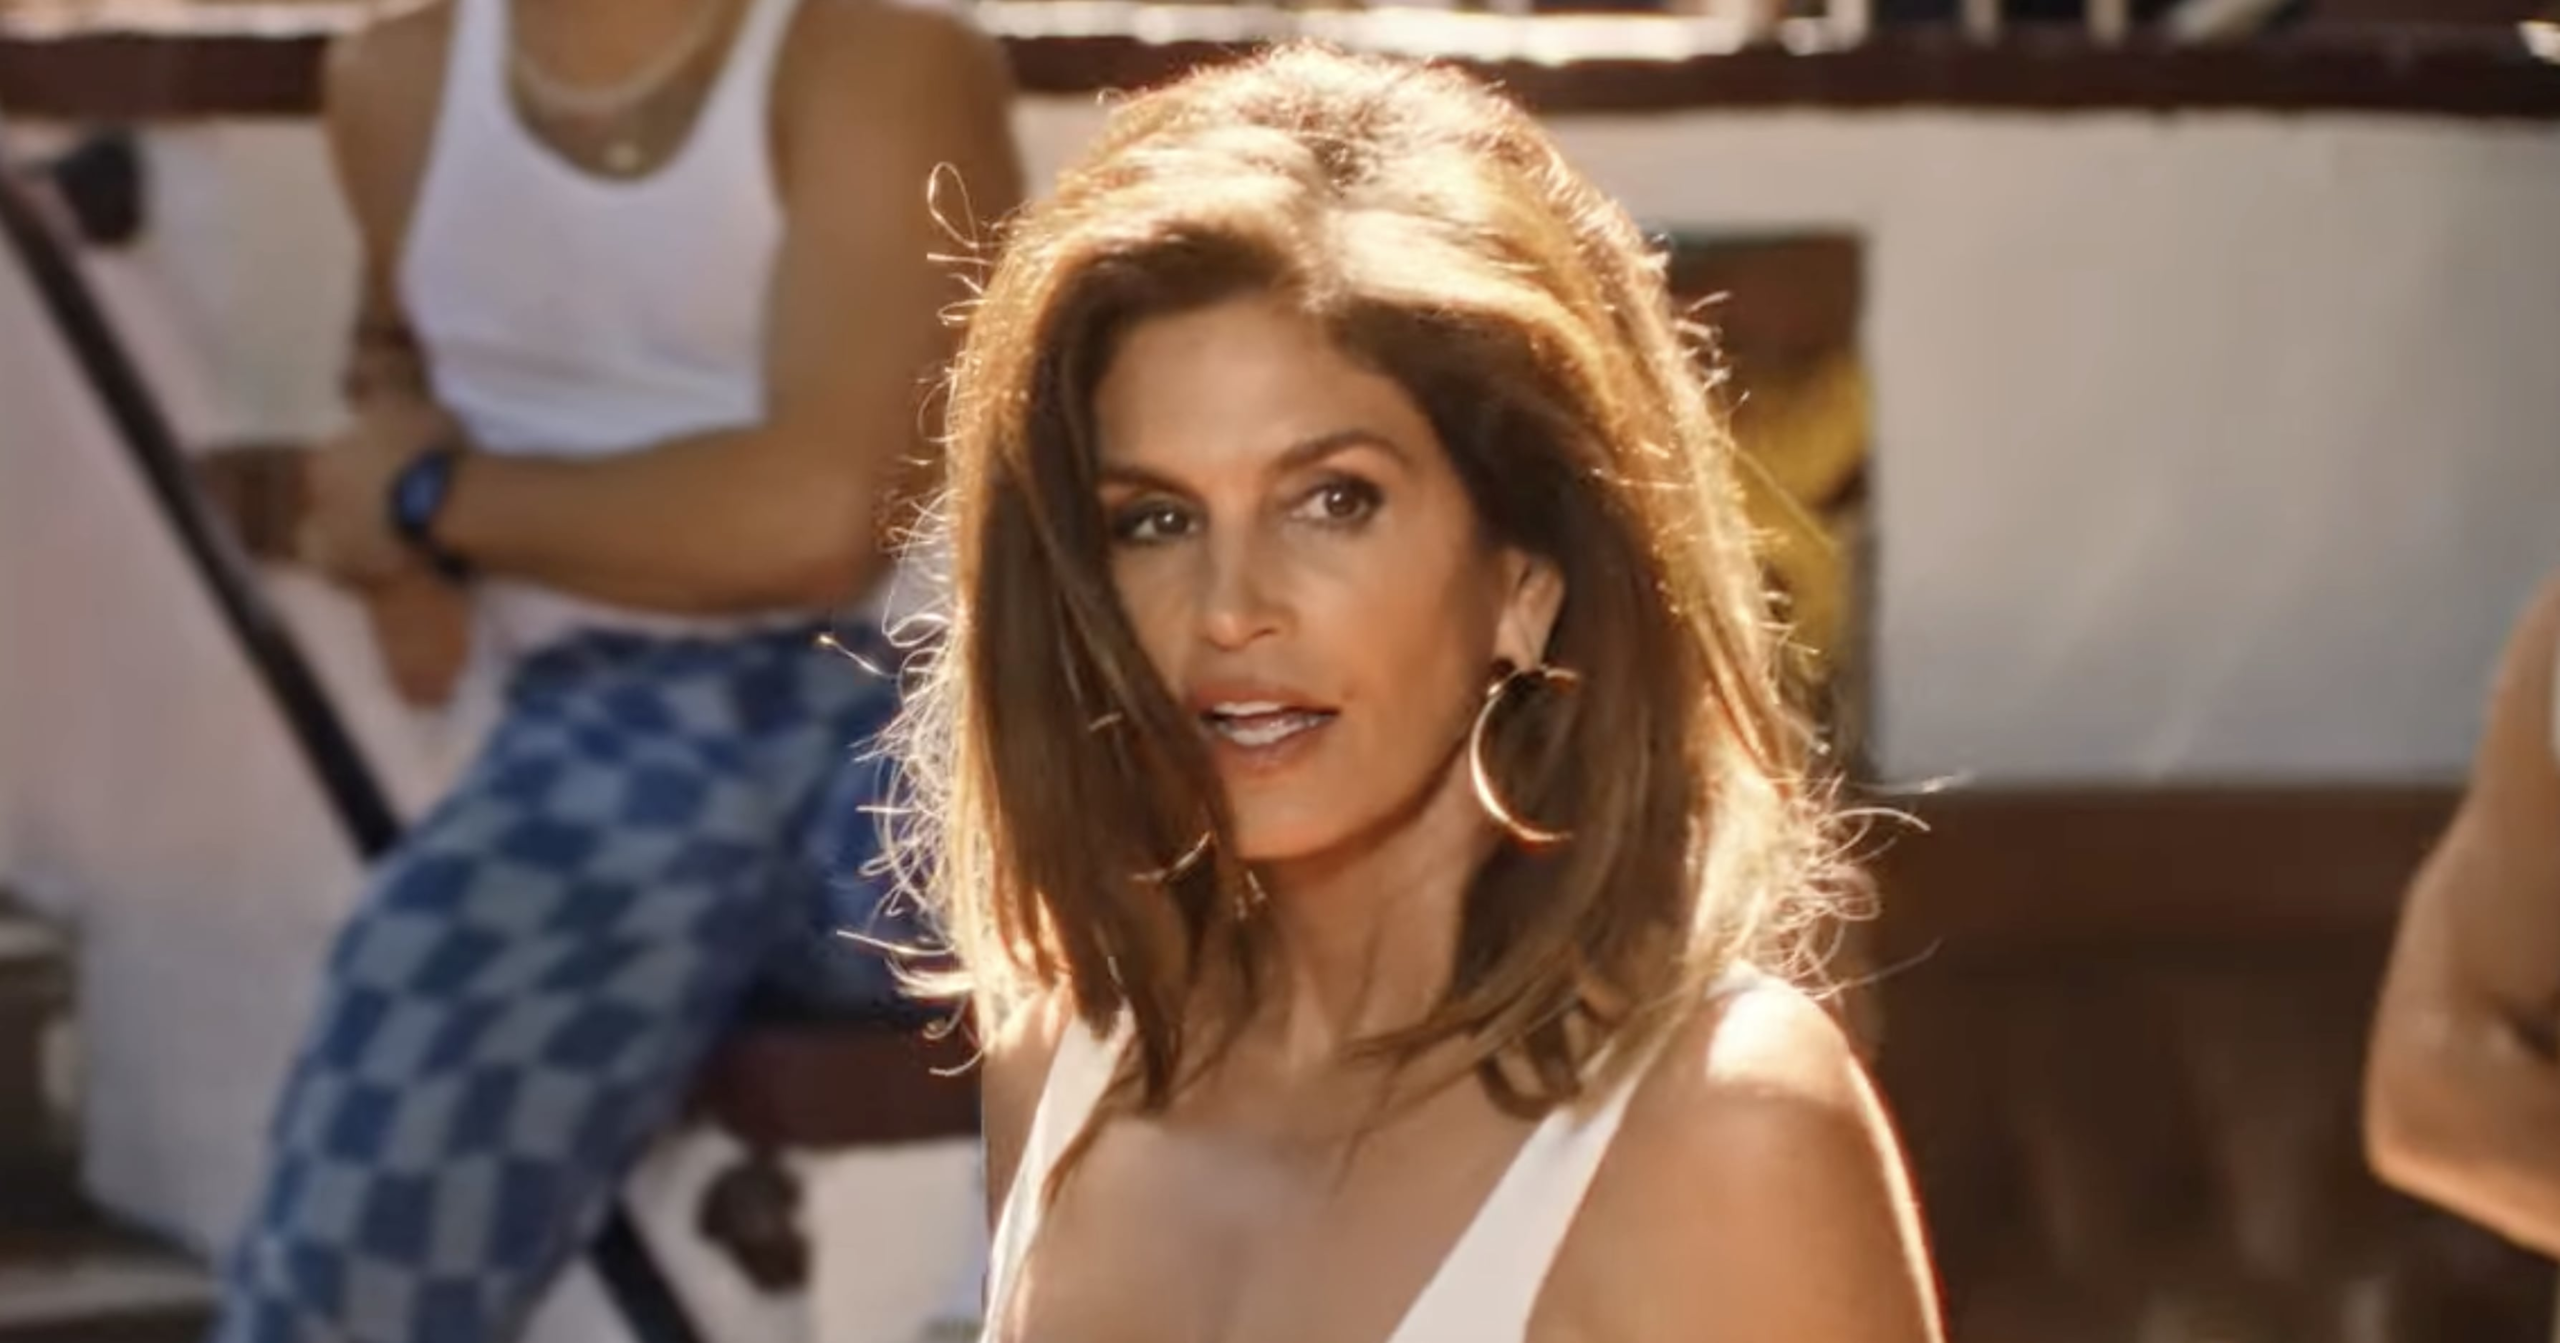 Синди Кроуфорд воссоздает прическу из рекламы Pepsi в музыкальном видео